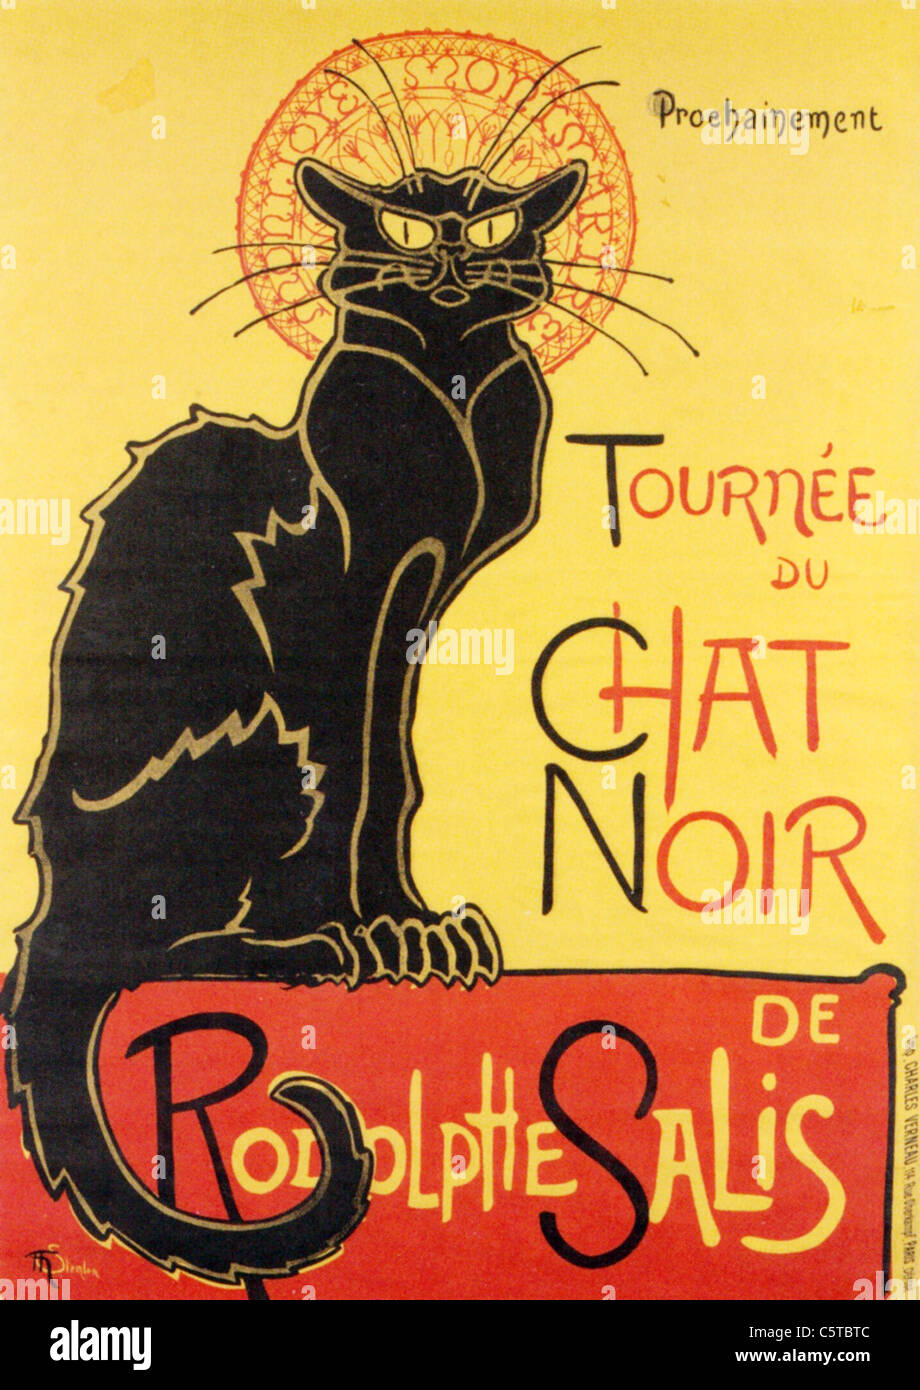 THEOPHILE STEINLEN (1859-1923) Schweizerin Jugendstil-Künstler, deren Werke ist dieses Plakat für das Chat Noir im Jahr 1896 Stockfoto